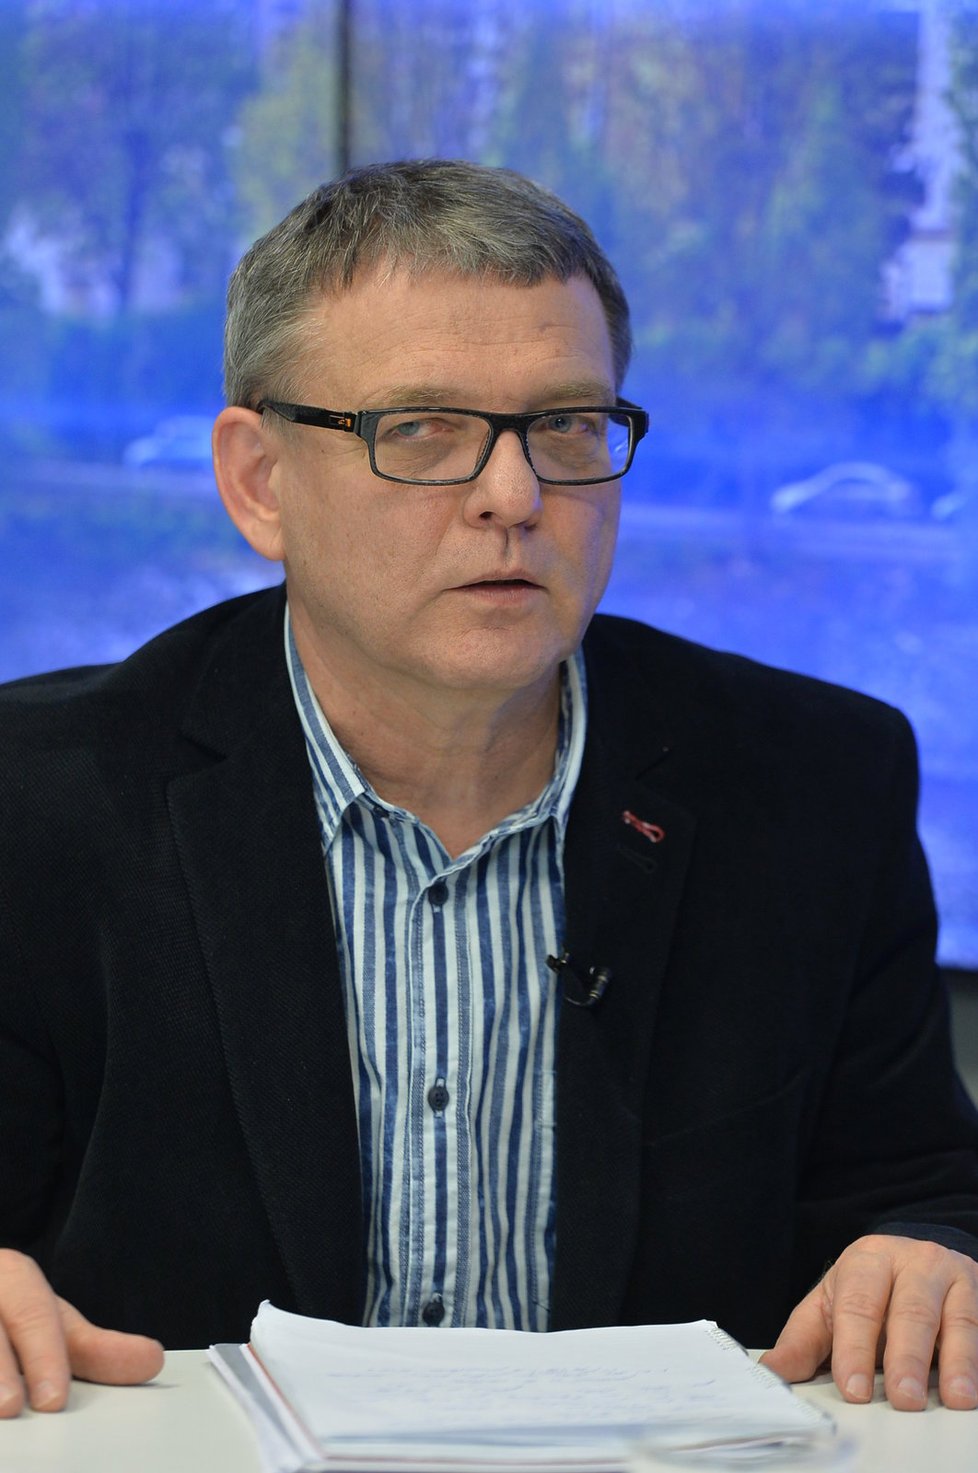 Ministr zahraničí Lubomír Zaorálek (ČSSD) ve studiu Blesku promluvil o vládní krizi